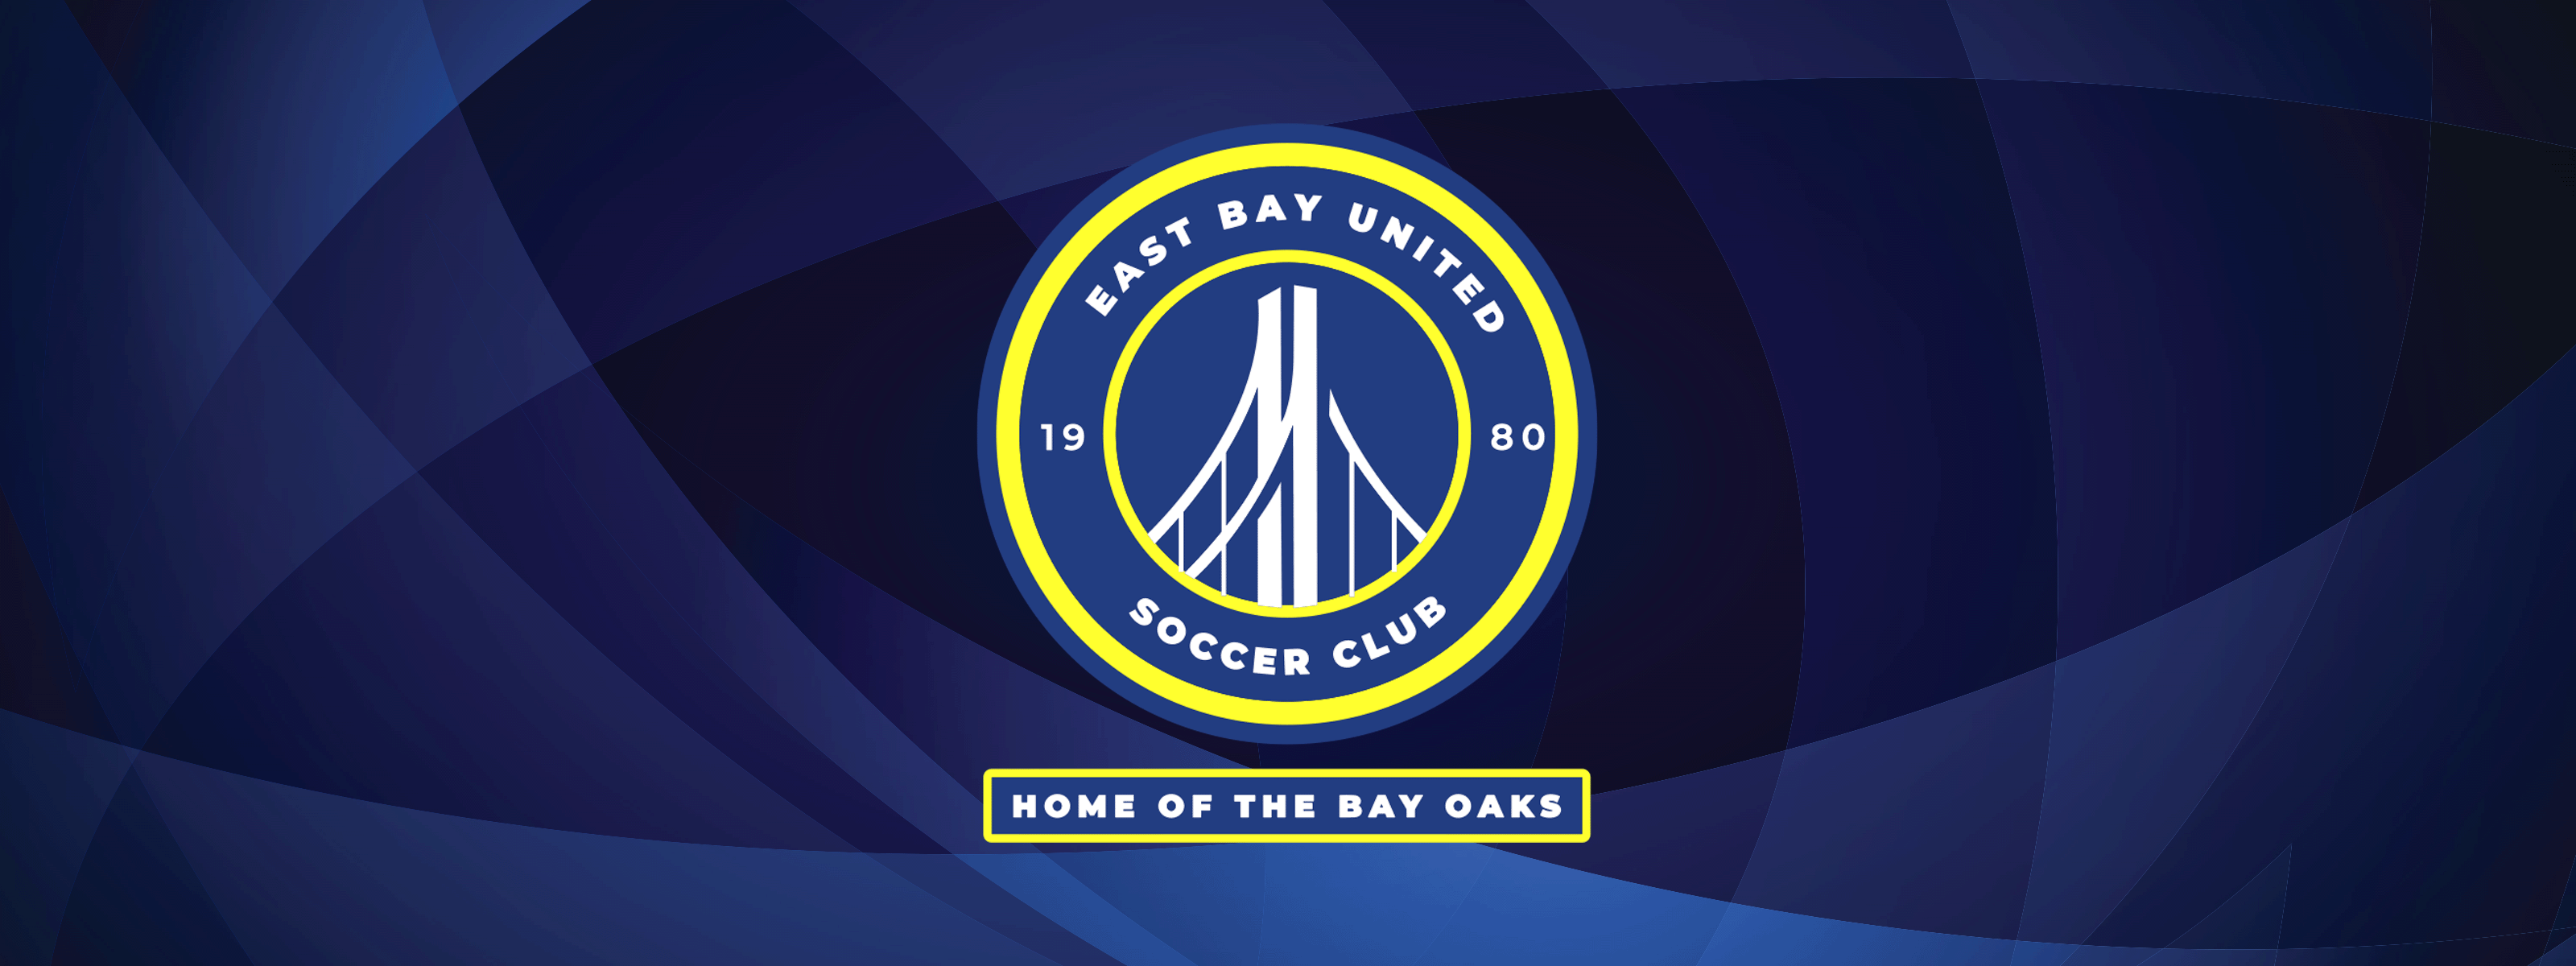 East Bay United Soccer Club